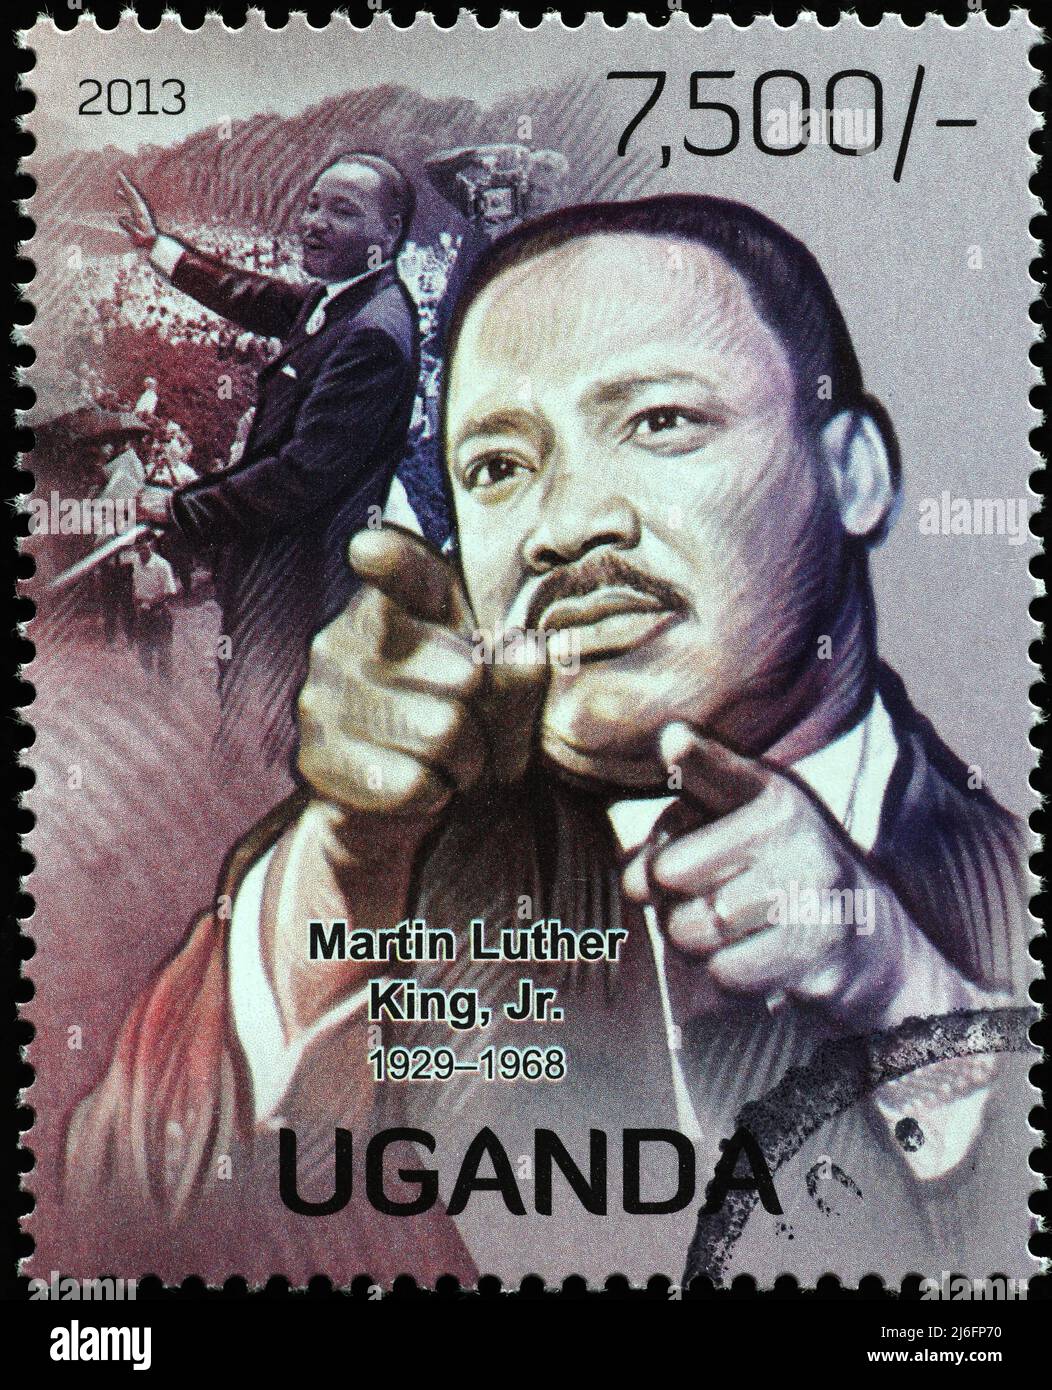 Martin Luther King Jr. Portrait sur timbre-poste de l'Ouganda Banque D'Images